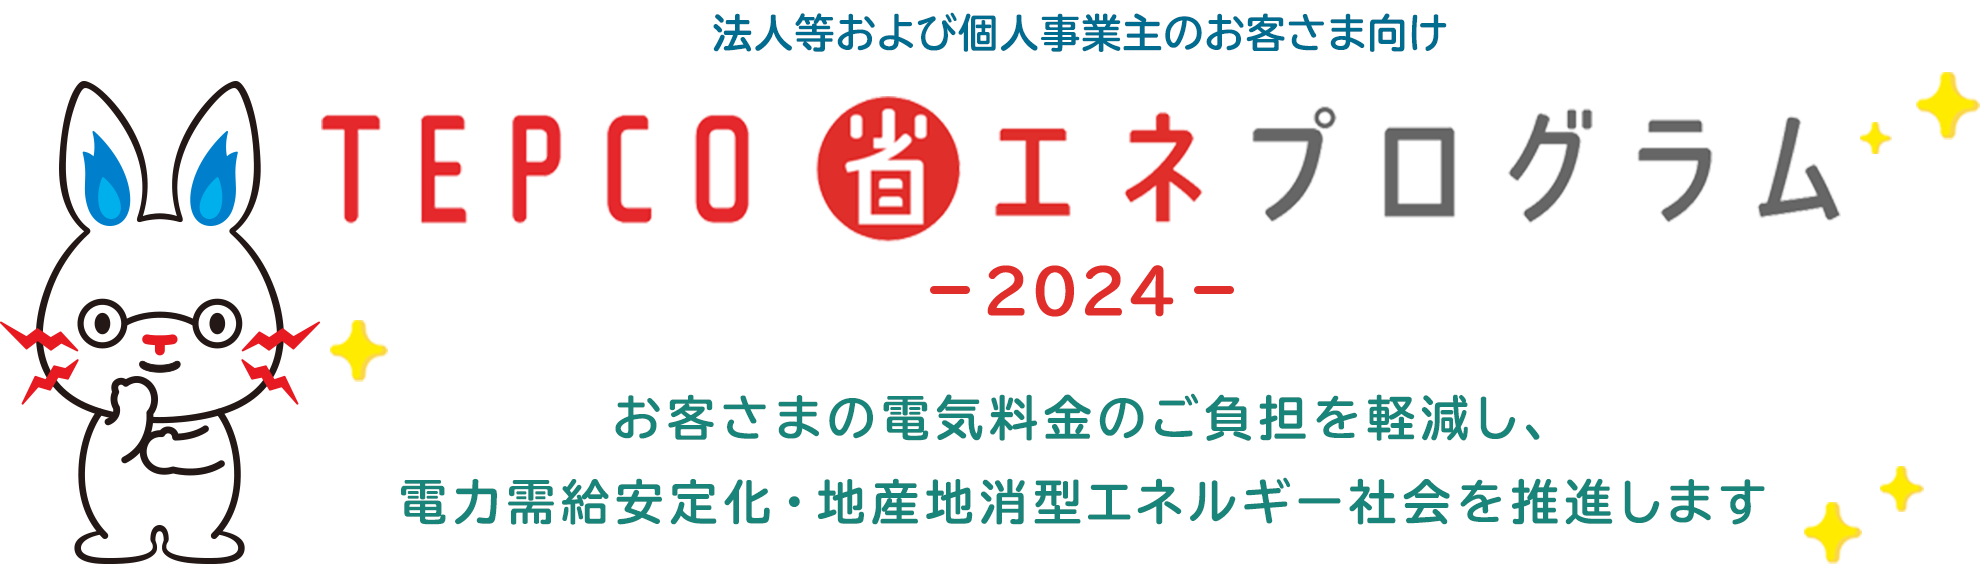 法人等および個人事業主のお客さま向け TEPCO 省エネプログラム -2024- お客さまの電気料金のご負担を軽減し、電力需給安定化・地産地消型エネルギー社会を推進します